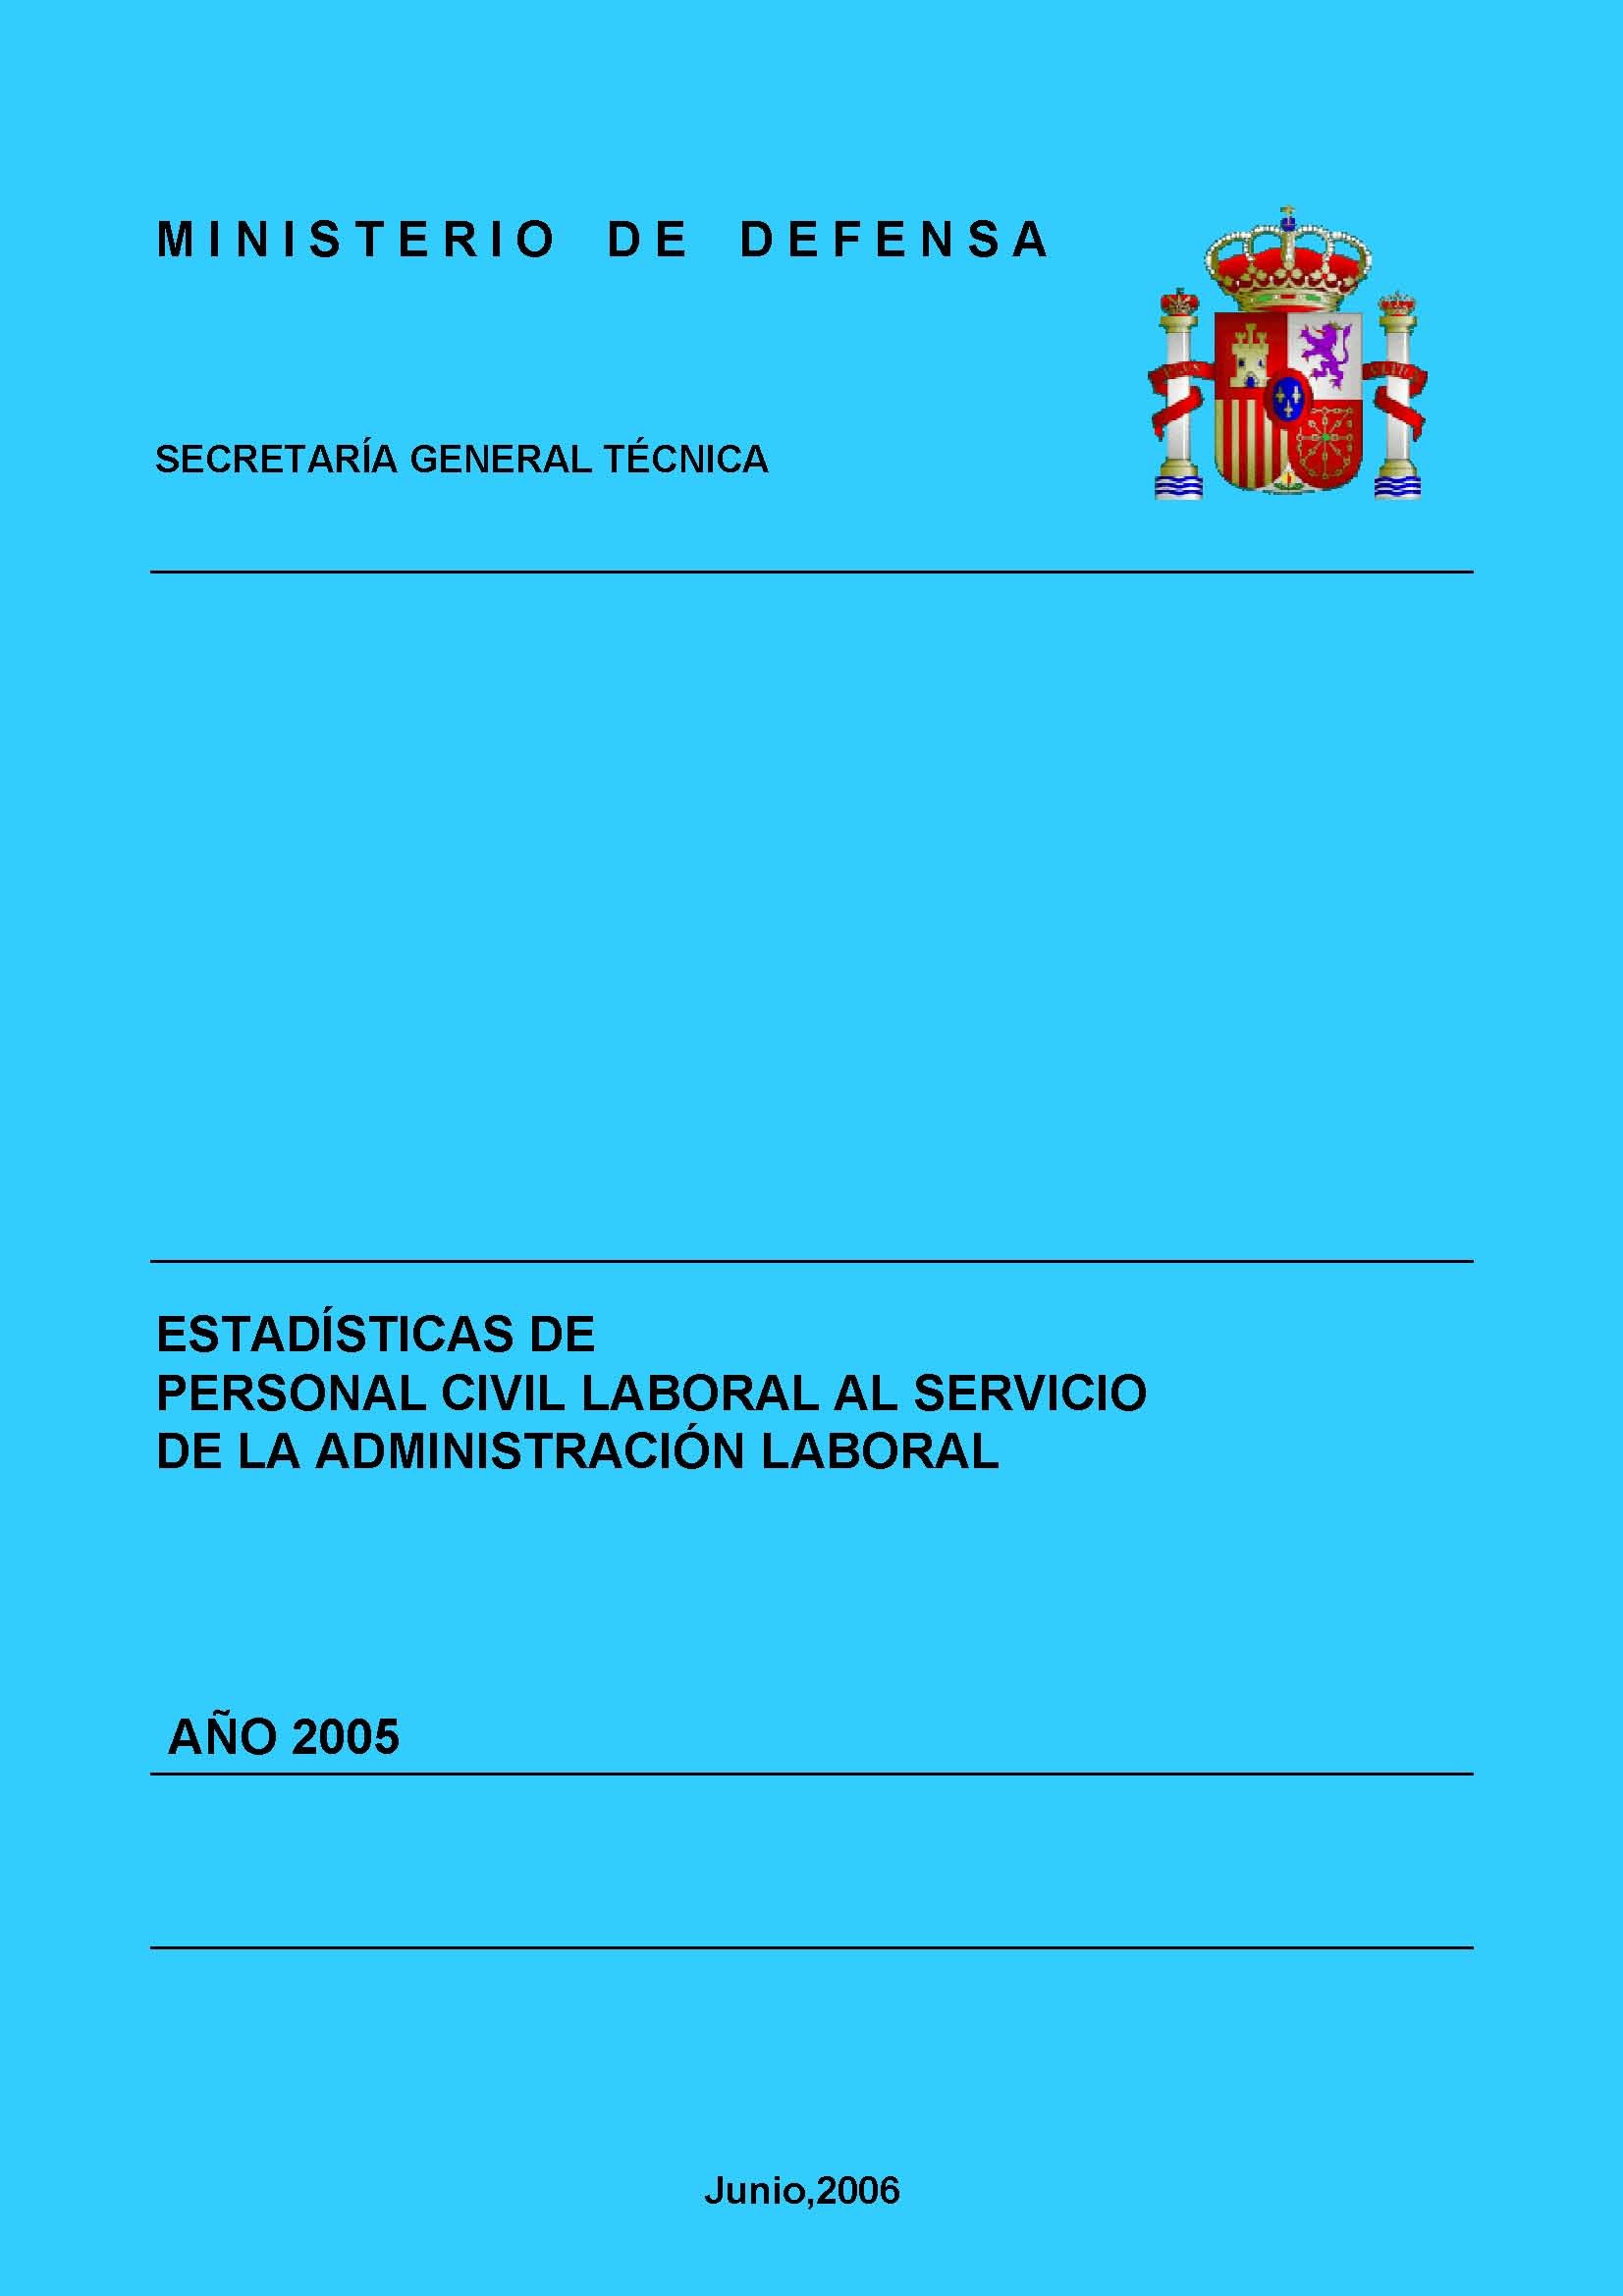 ESTADÍSTICA DEL PERSONAL CIVIL LABORAL AL SERVICIO DE LA ADMINISTRACIÓN MILITAR 2005